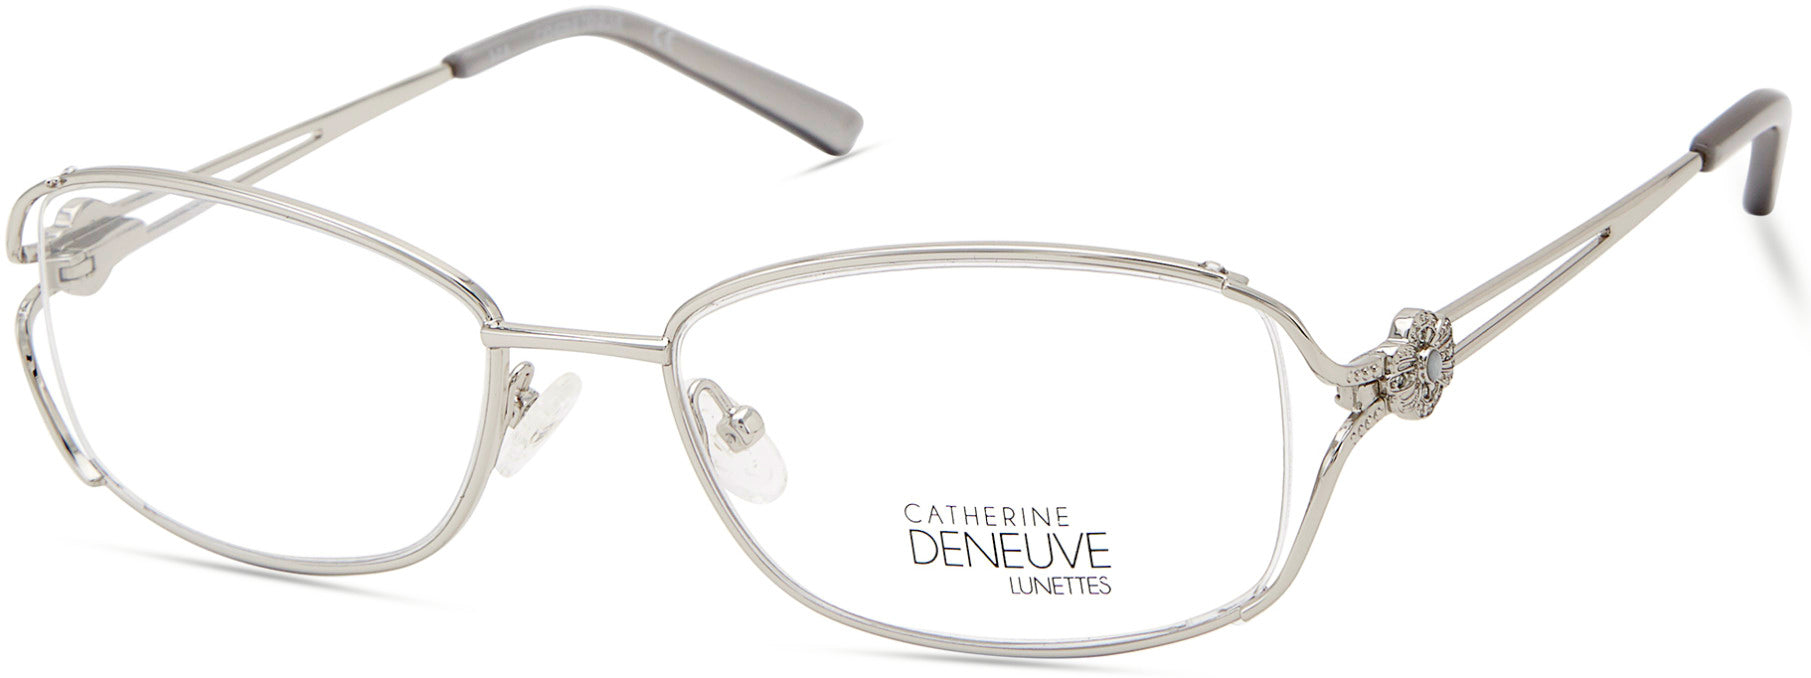 Catherine Deneuve CD0425 Oval Eyeglasses 010-010 - Shiny Light Nickeltin